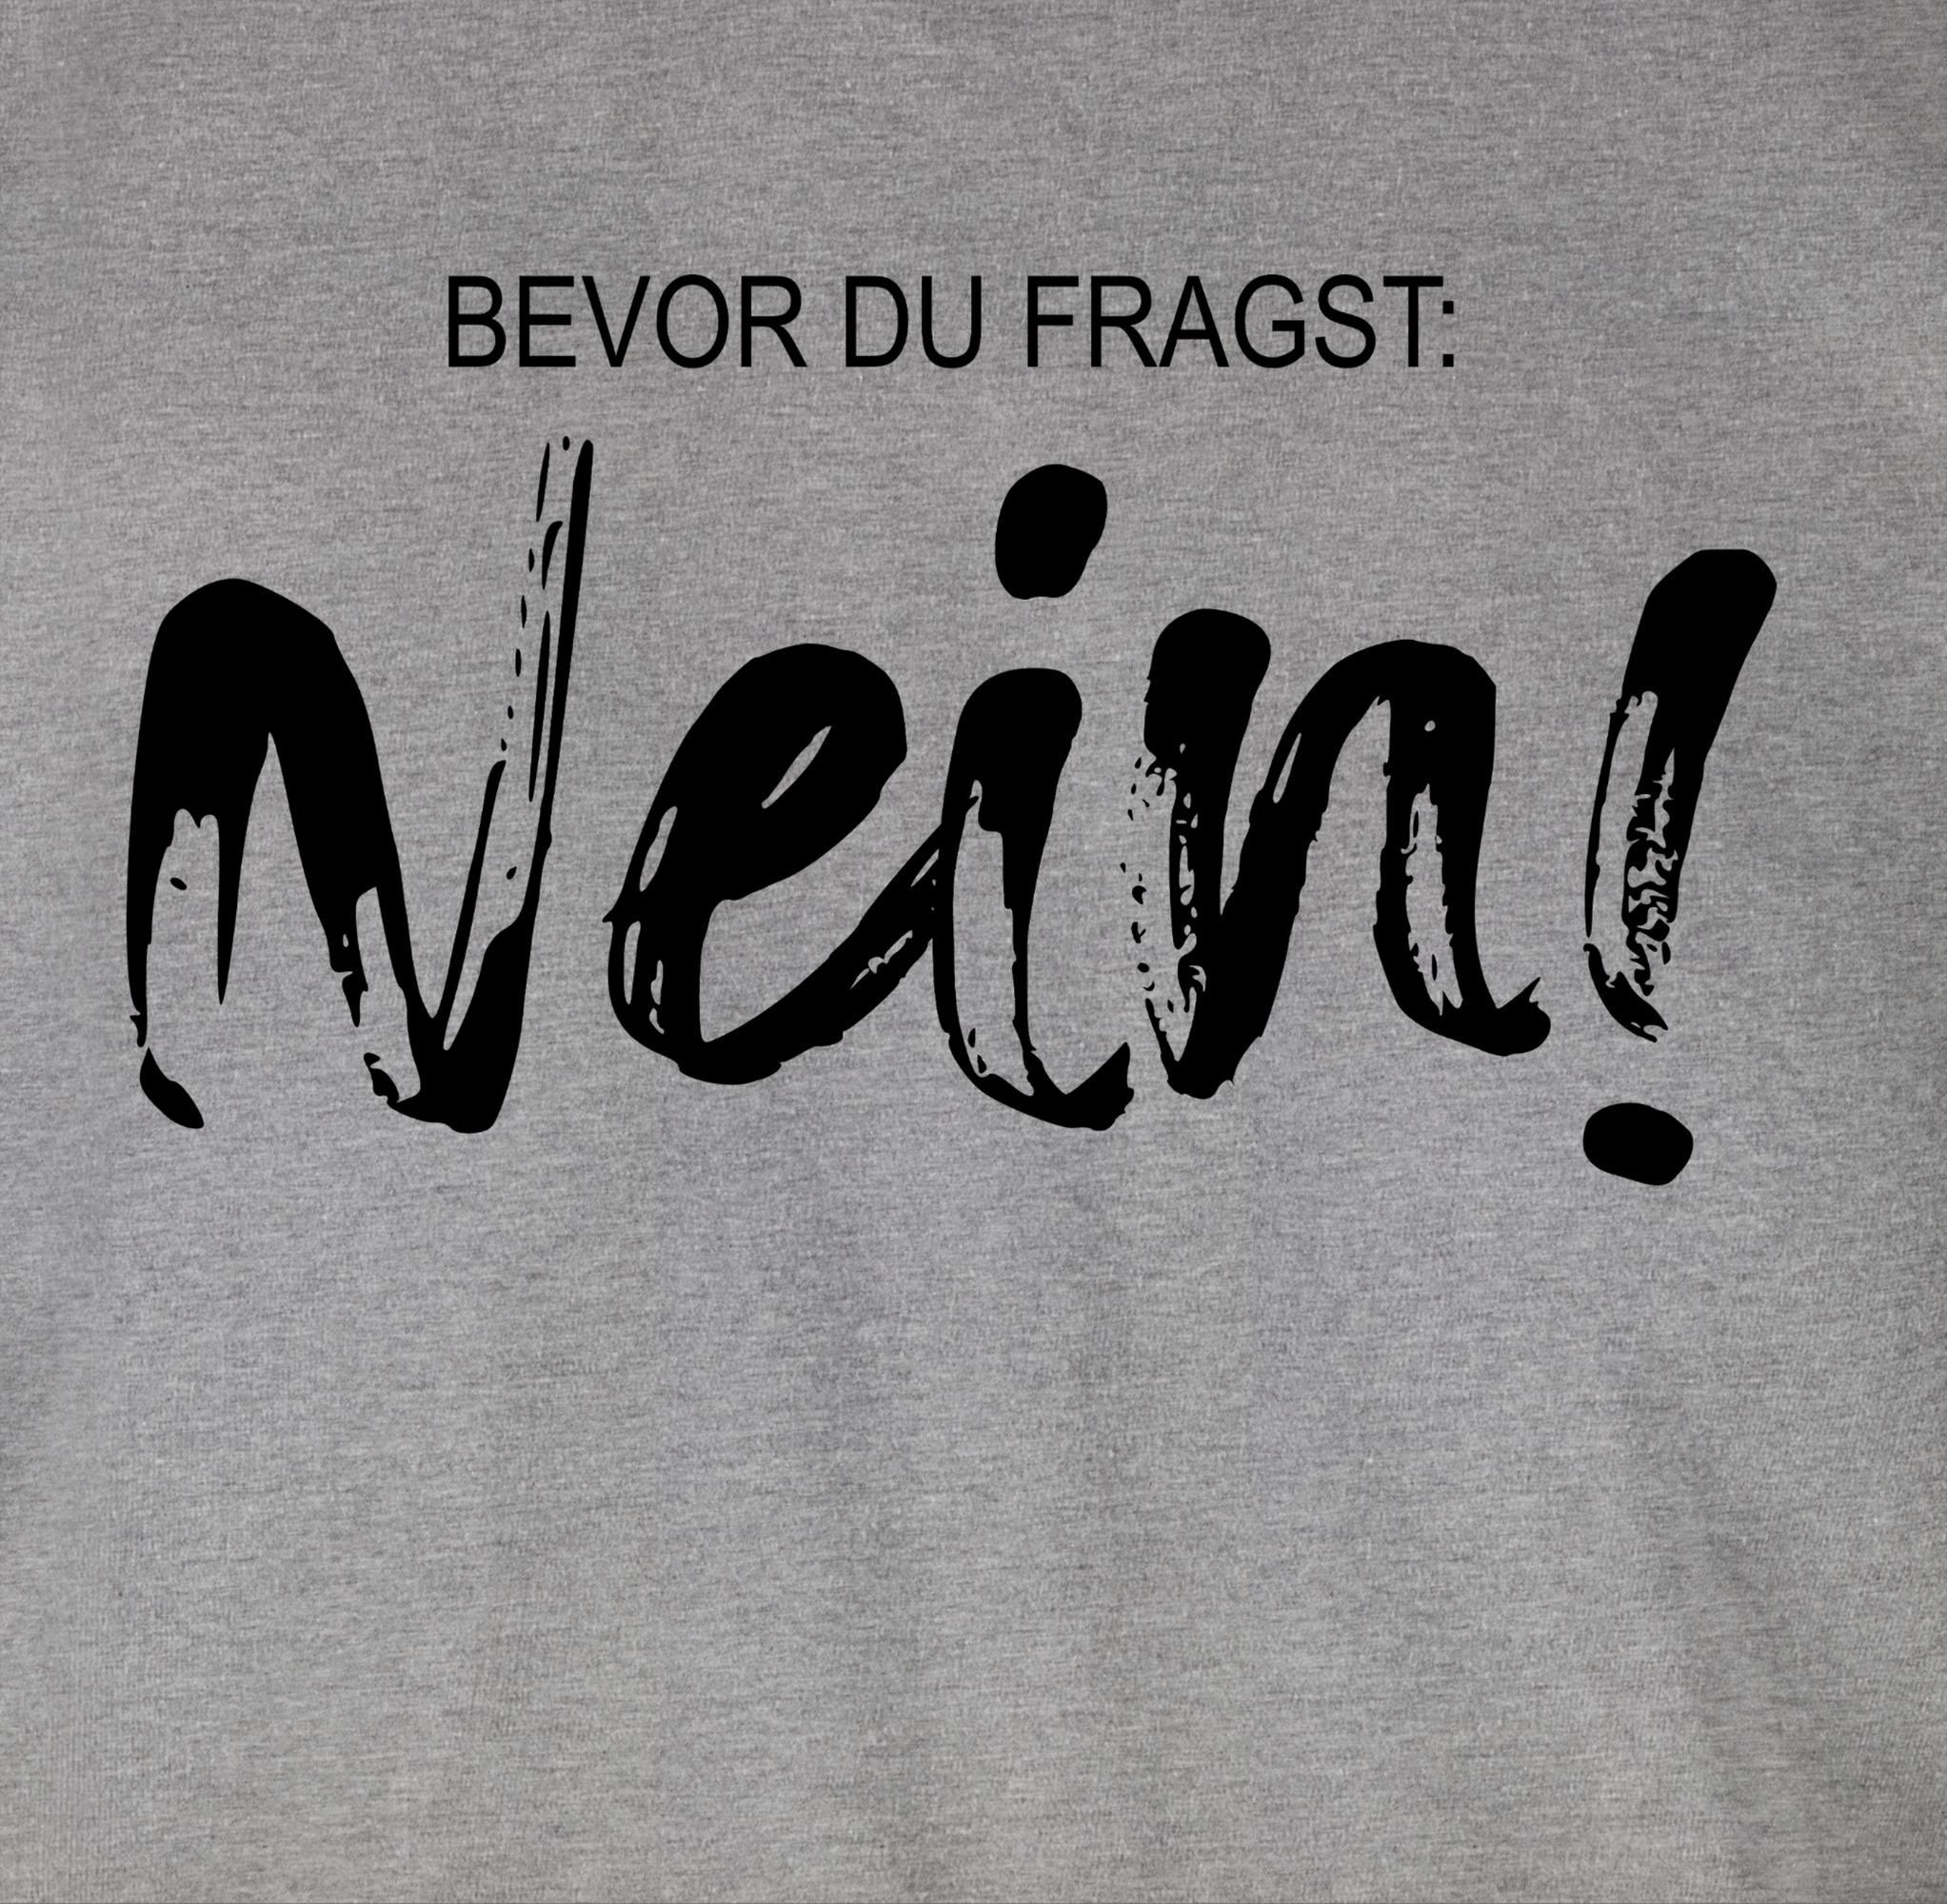 Statement Bevor Kollegen Geschenk T-Shirt Spruch fragst Arbeit NEIN 01 du Lustiger Grau Shirtracer meliert